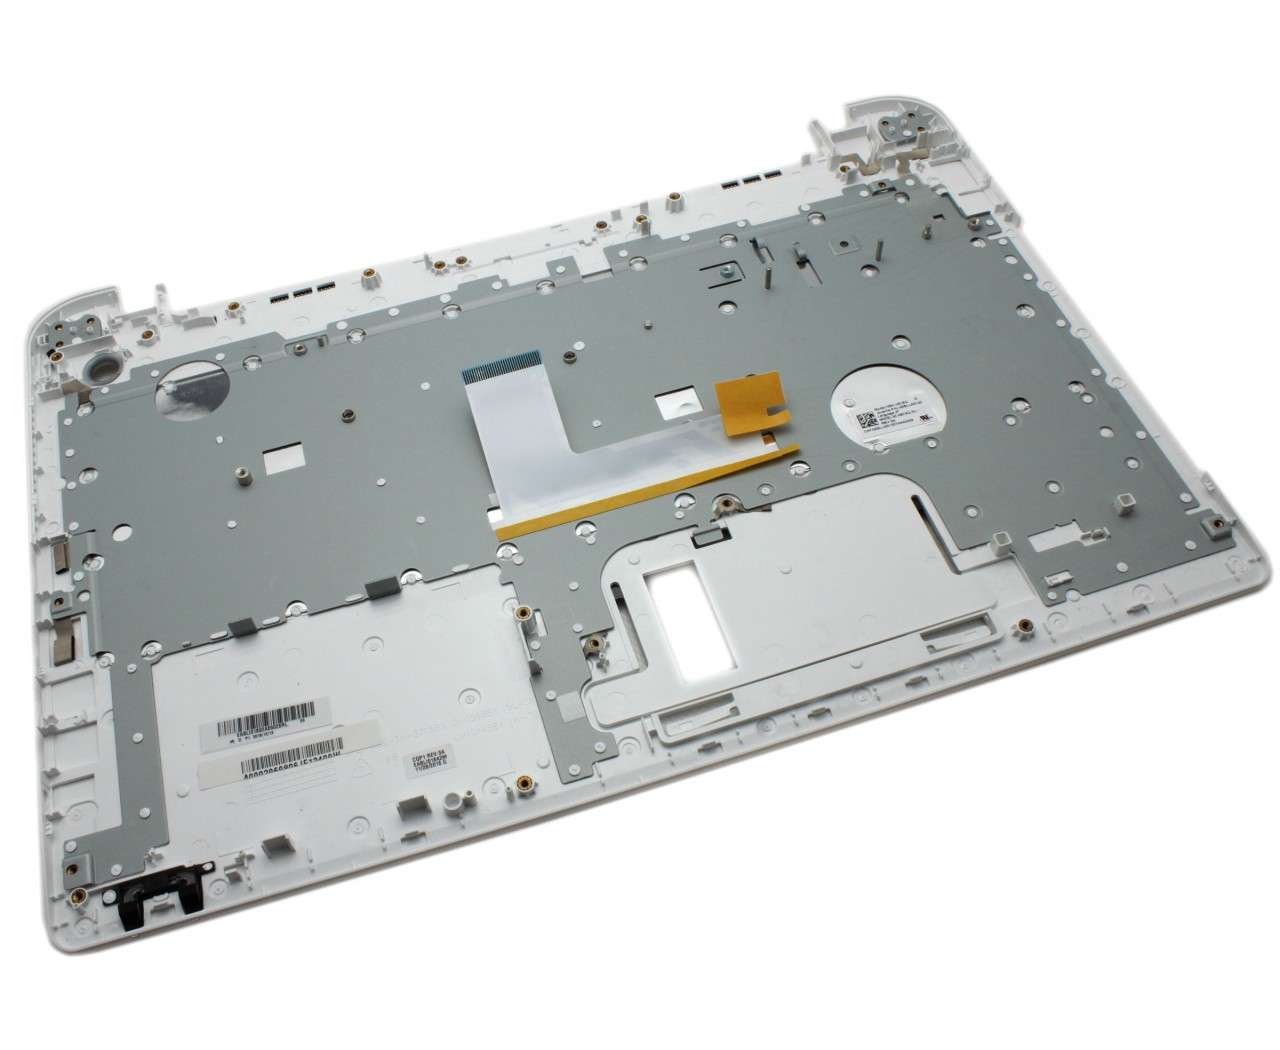 Tastatura Toshiba Satellite L50-B alba cu Palmrest alb fara touchpad